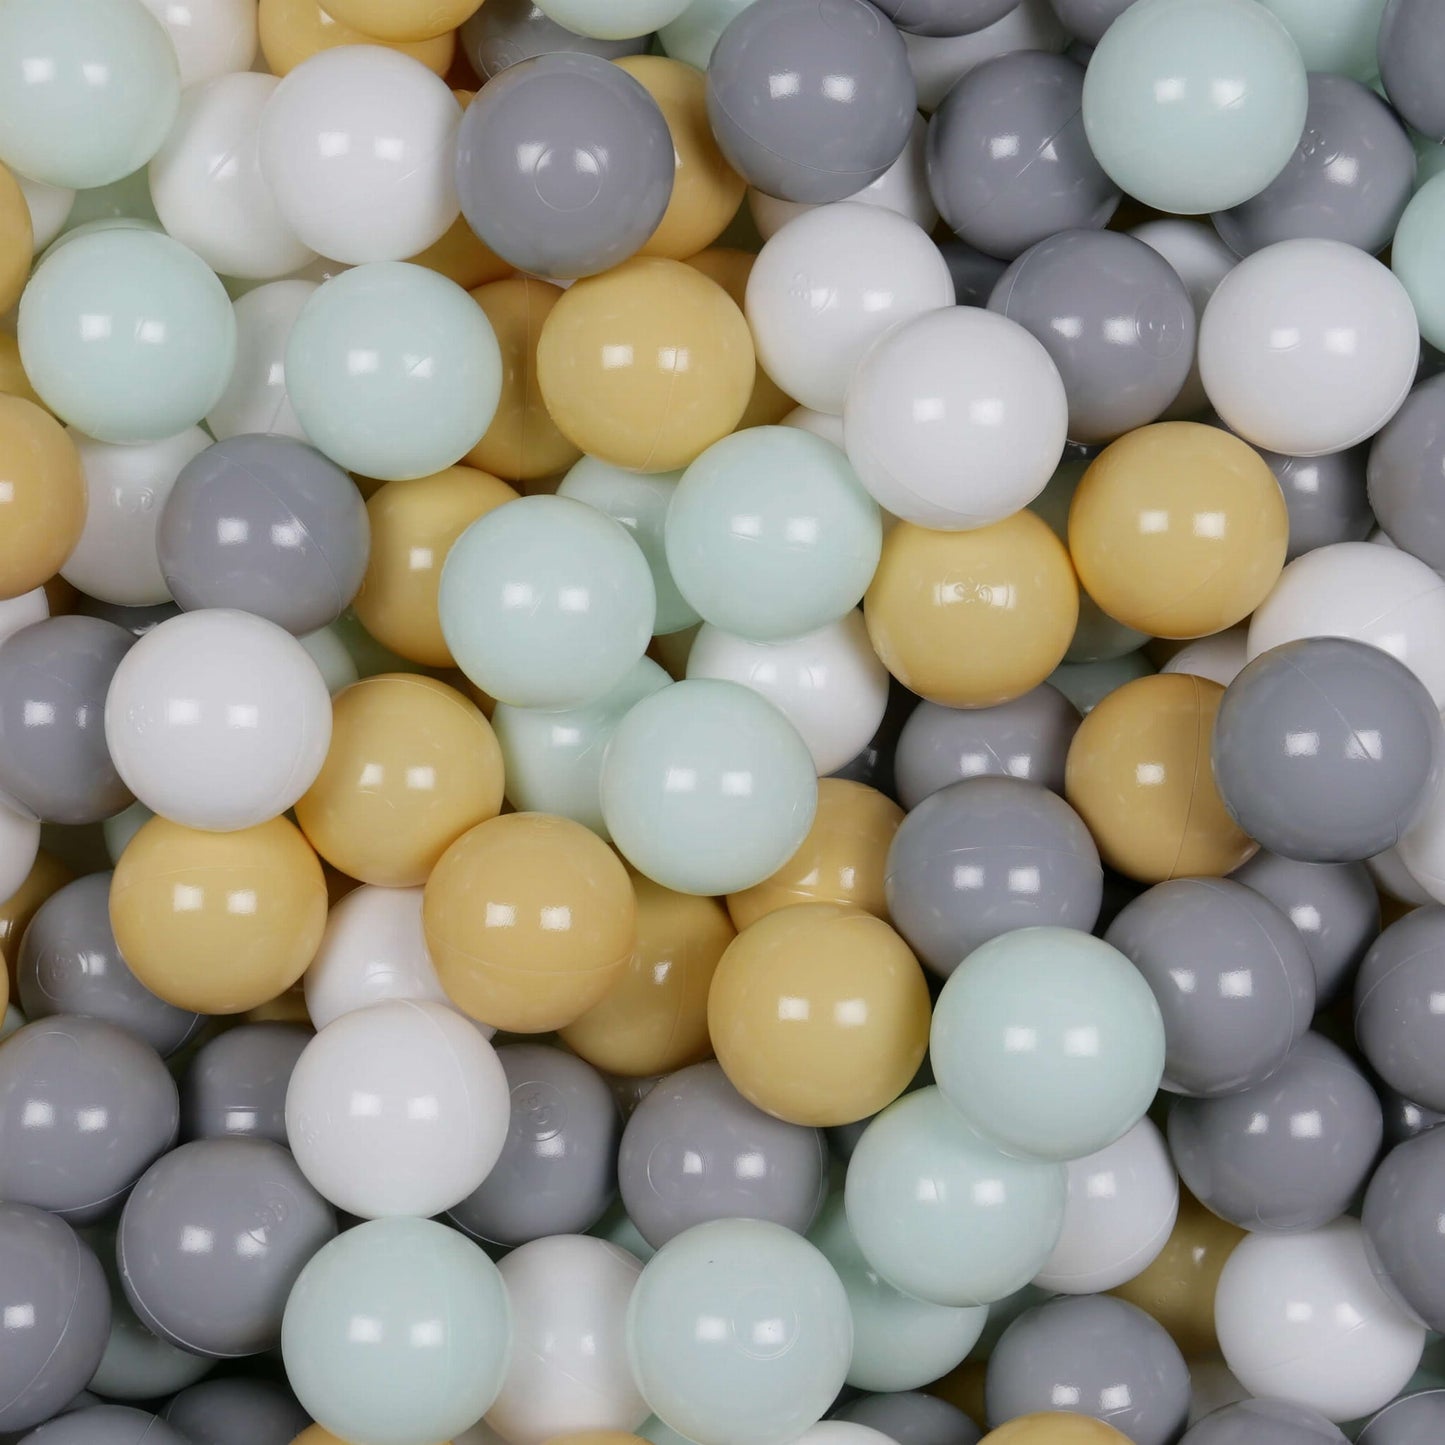 Balles de jeu ø7cm 300 pièces blanc, menthe claire, gris, beige